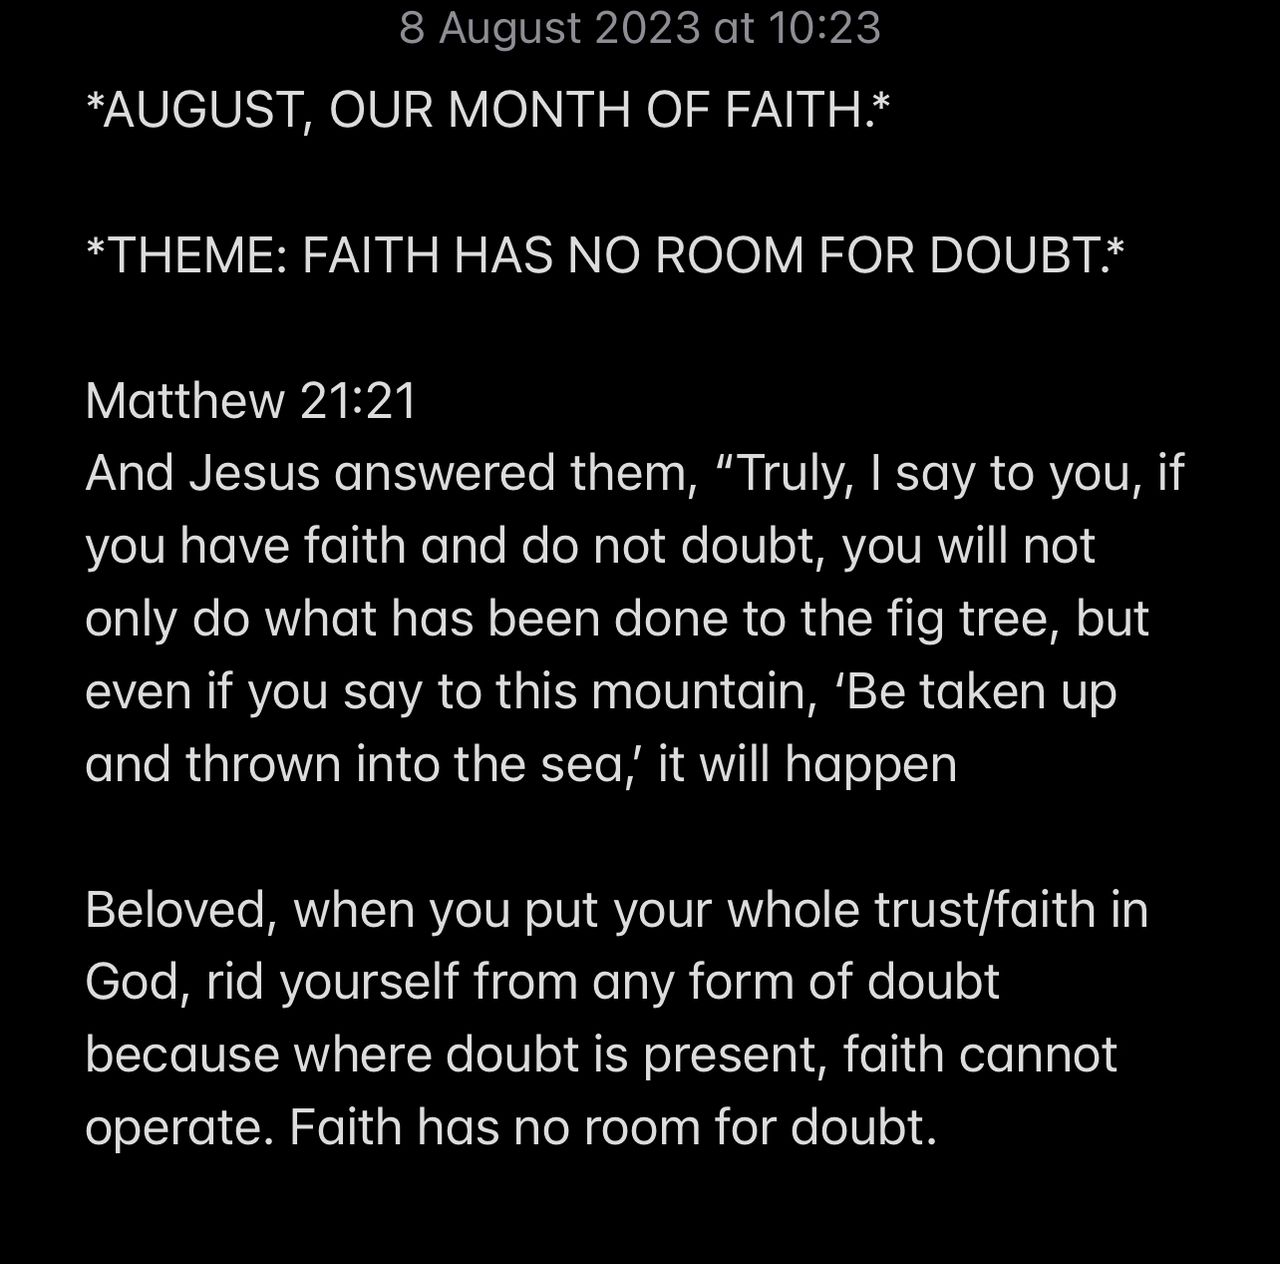 FAITH HAS NO ROOM FOR DOUBT.